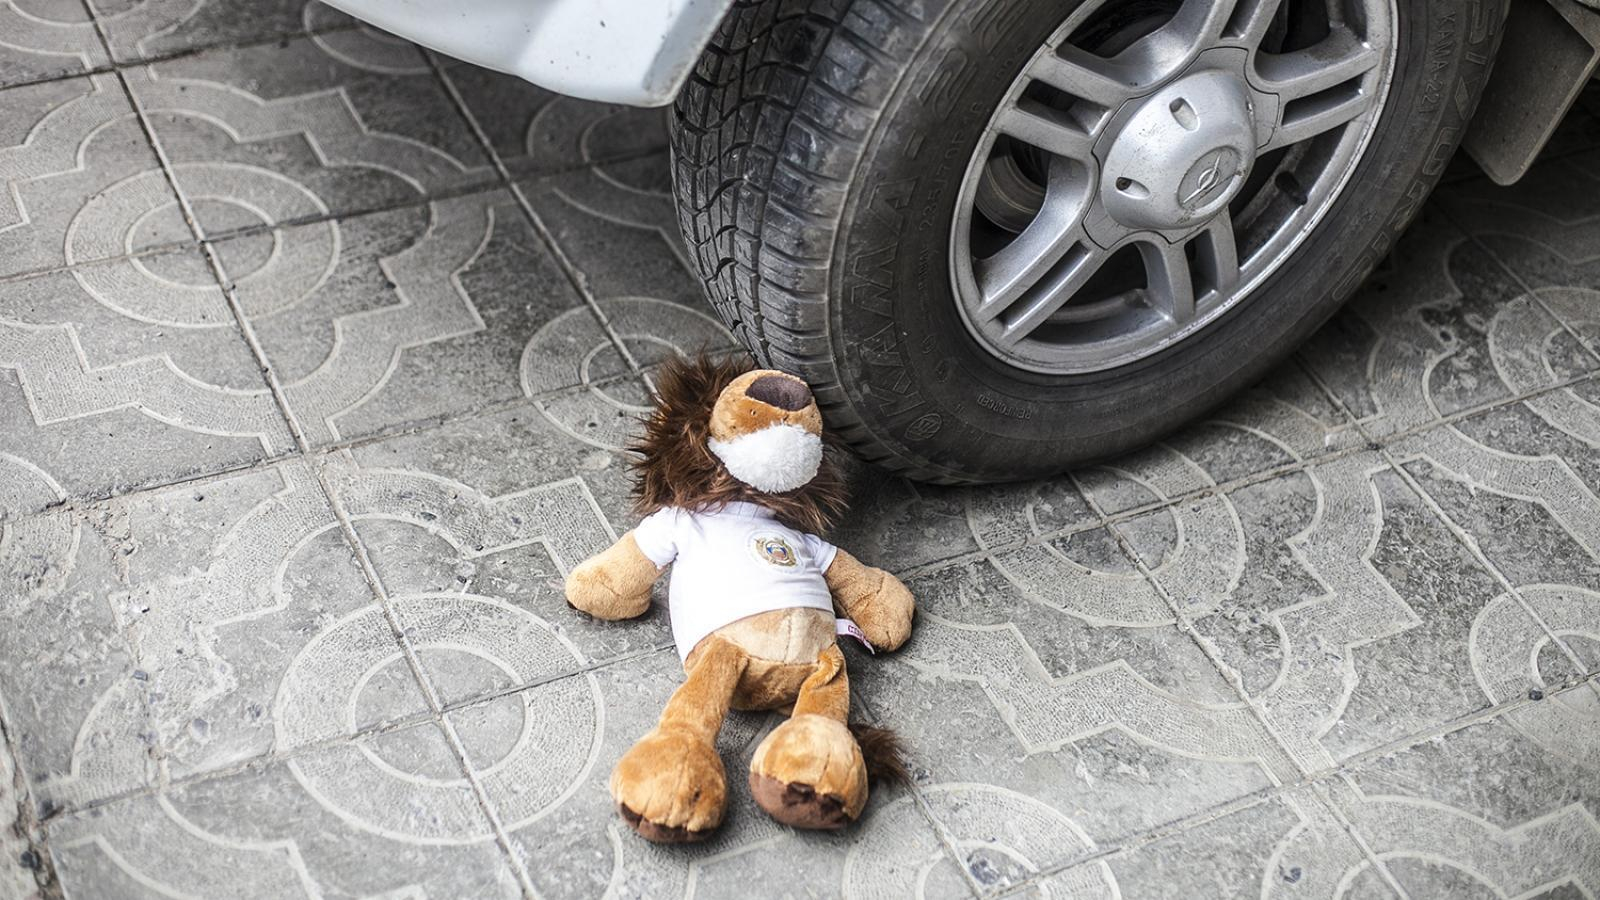 В Азербайджане отец случайно сбил на машине своего 4-летнего сына